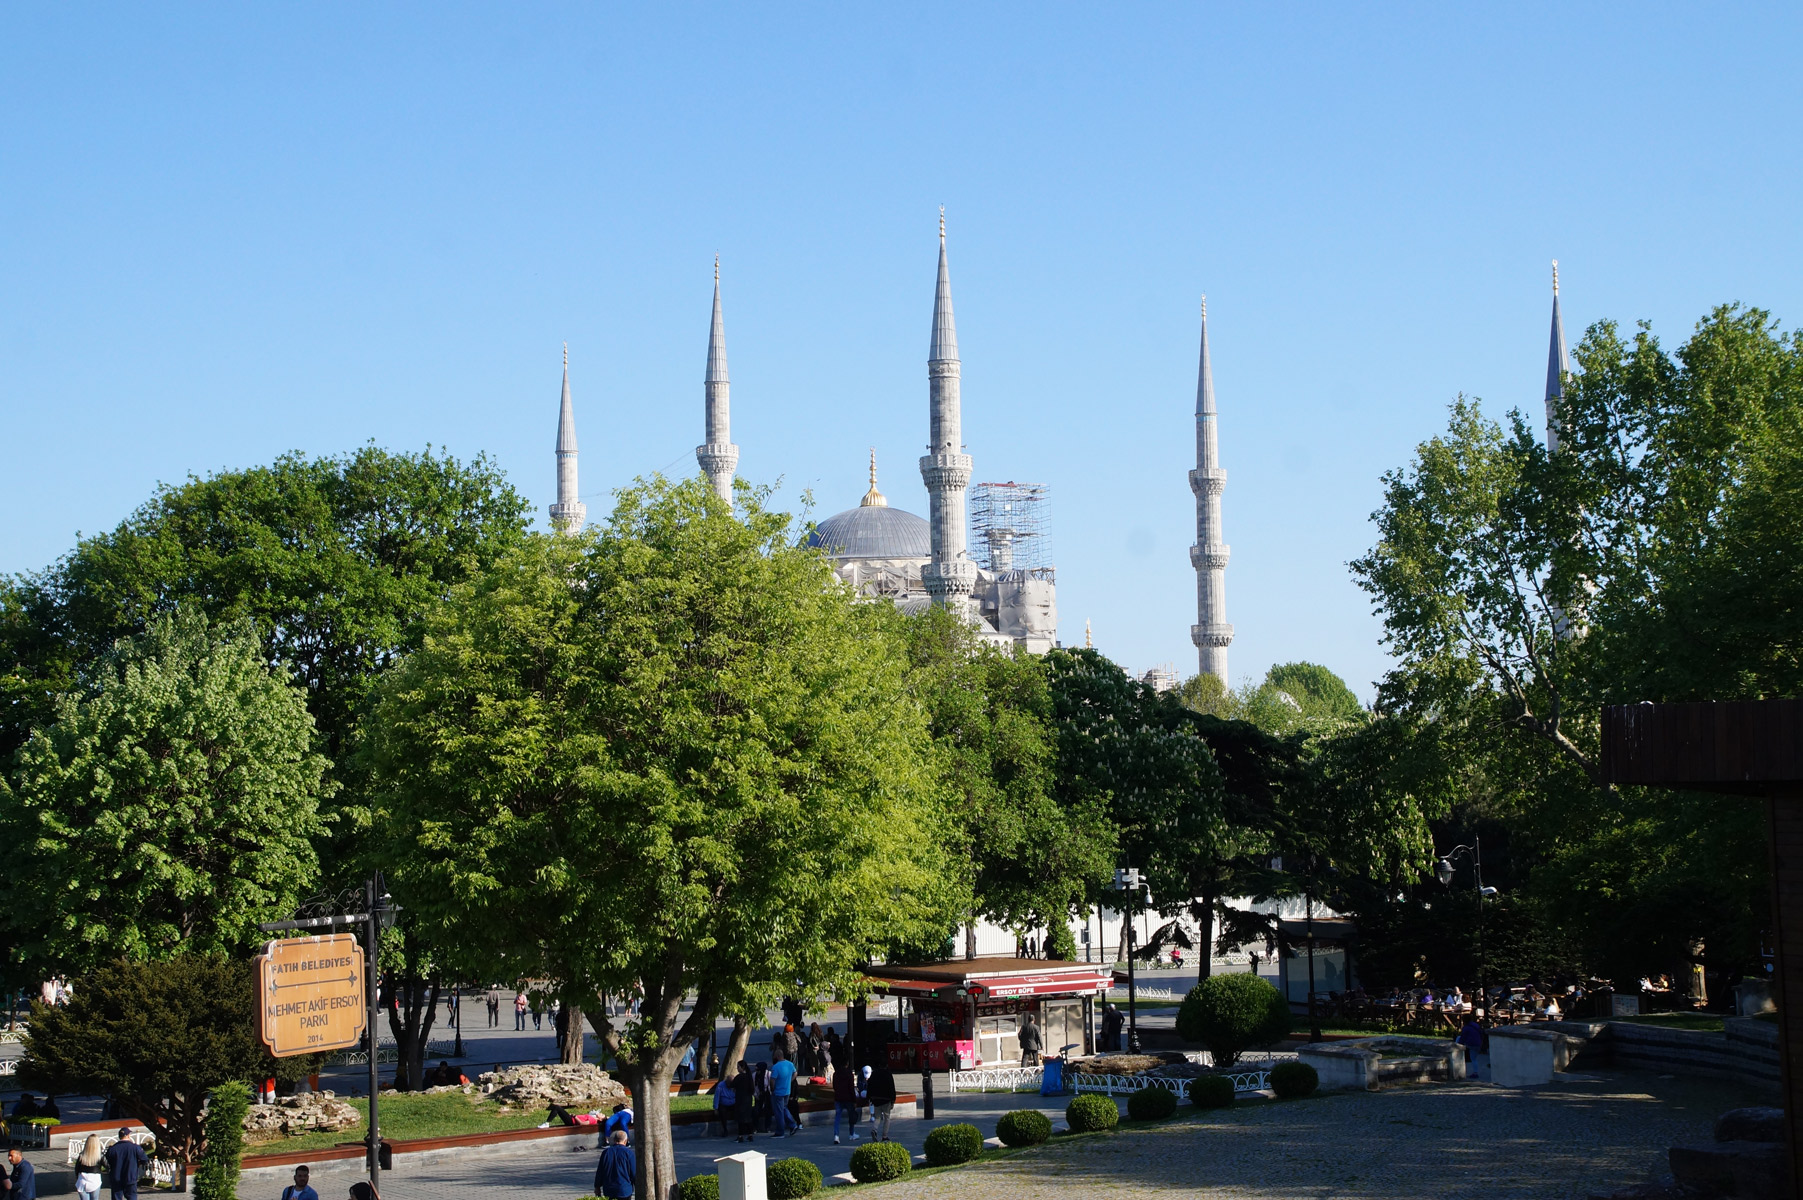 Парк Мехмет Акиф Эрсой примечателен свободными лавочками в тени, где можно передохнуть после освоения Святой Софии, и конечно же, видом на Голубую мечеть.

Стамбул, Турция, весна 2019